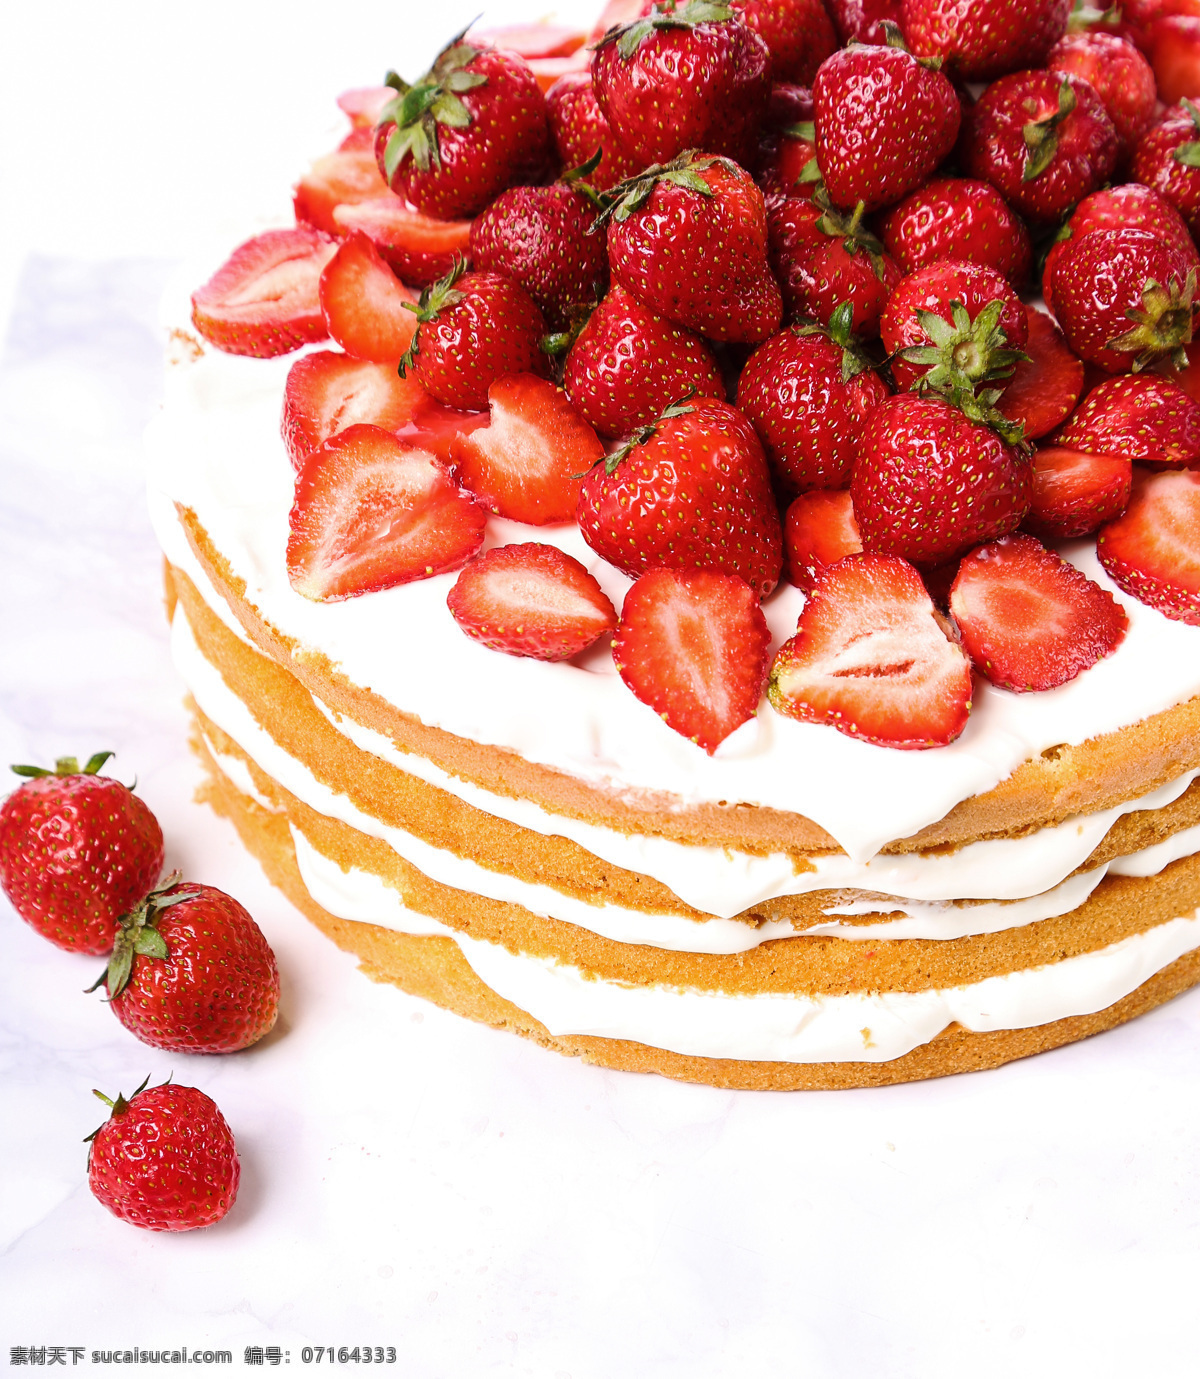 草莓蛋糕摄影 草莓 新鲜水果 水果蛋糕 草莓蛋糕 甜品 美食 美味 糕点 甜点 其他类别 餐饮美食 白色